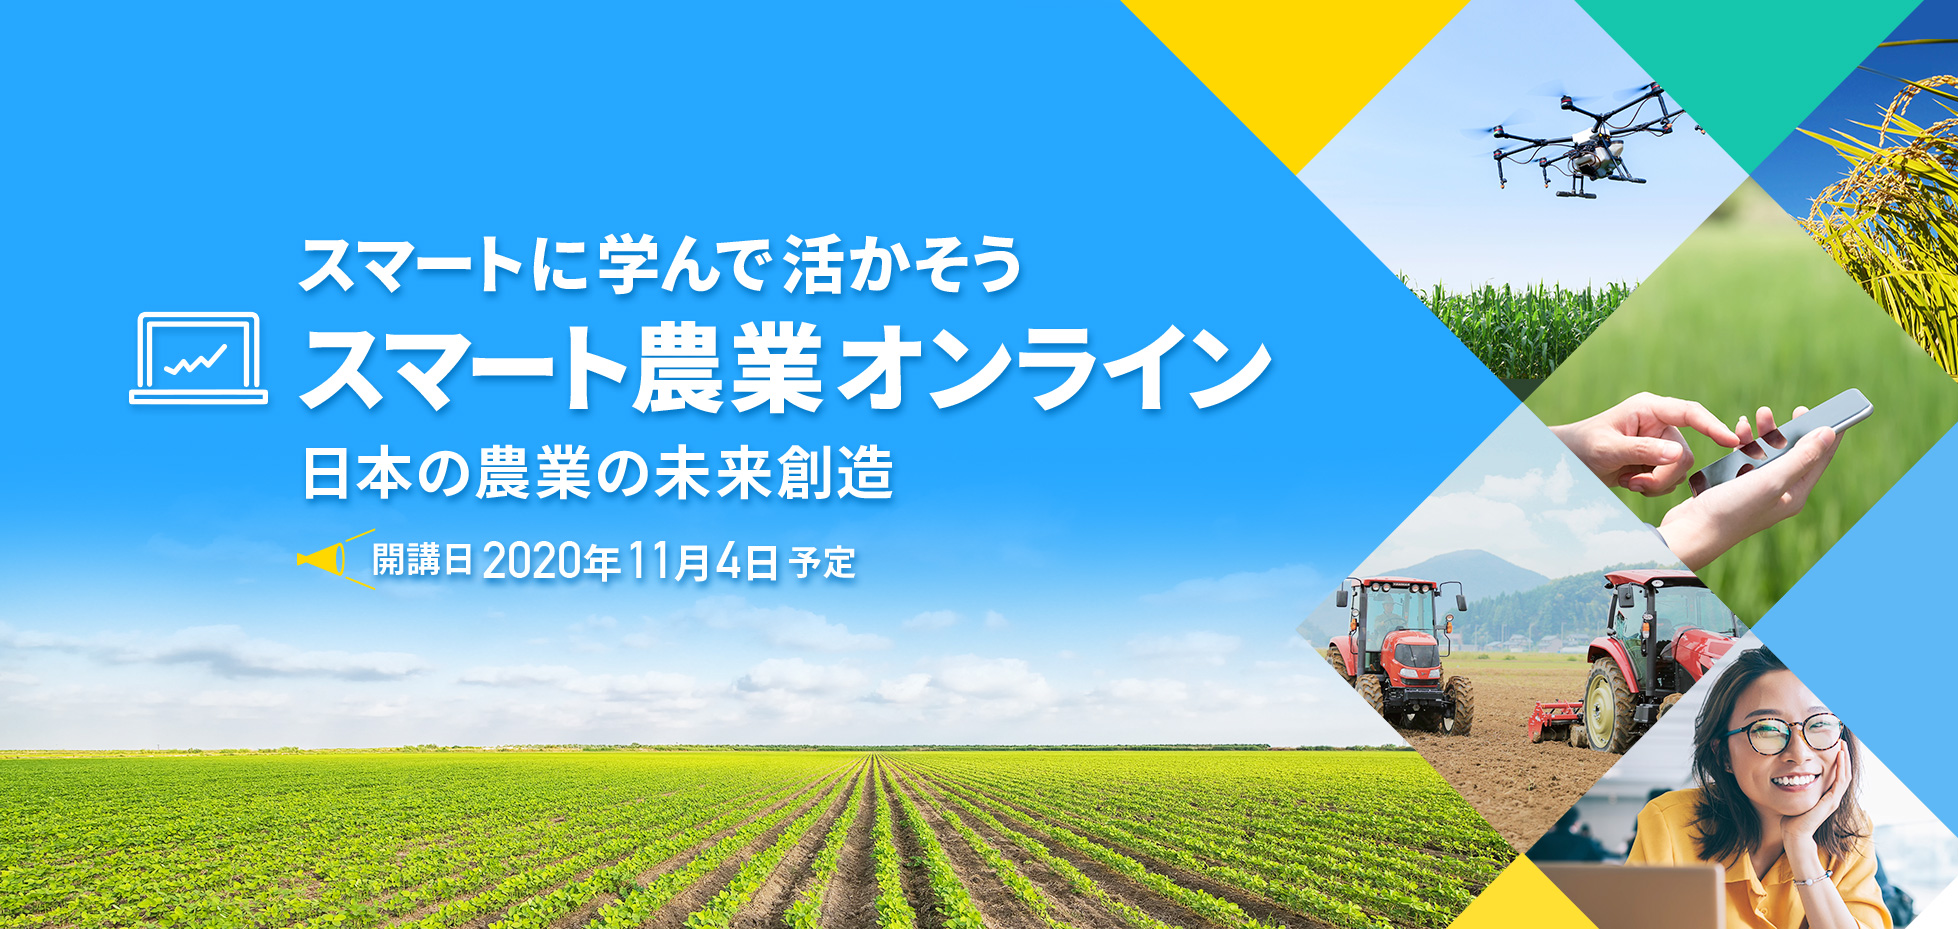 スマートに学んで活かそう スマート農業オンライン 日本の農業の未来創造